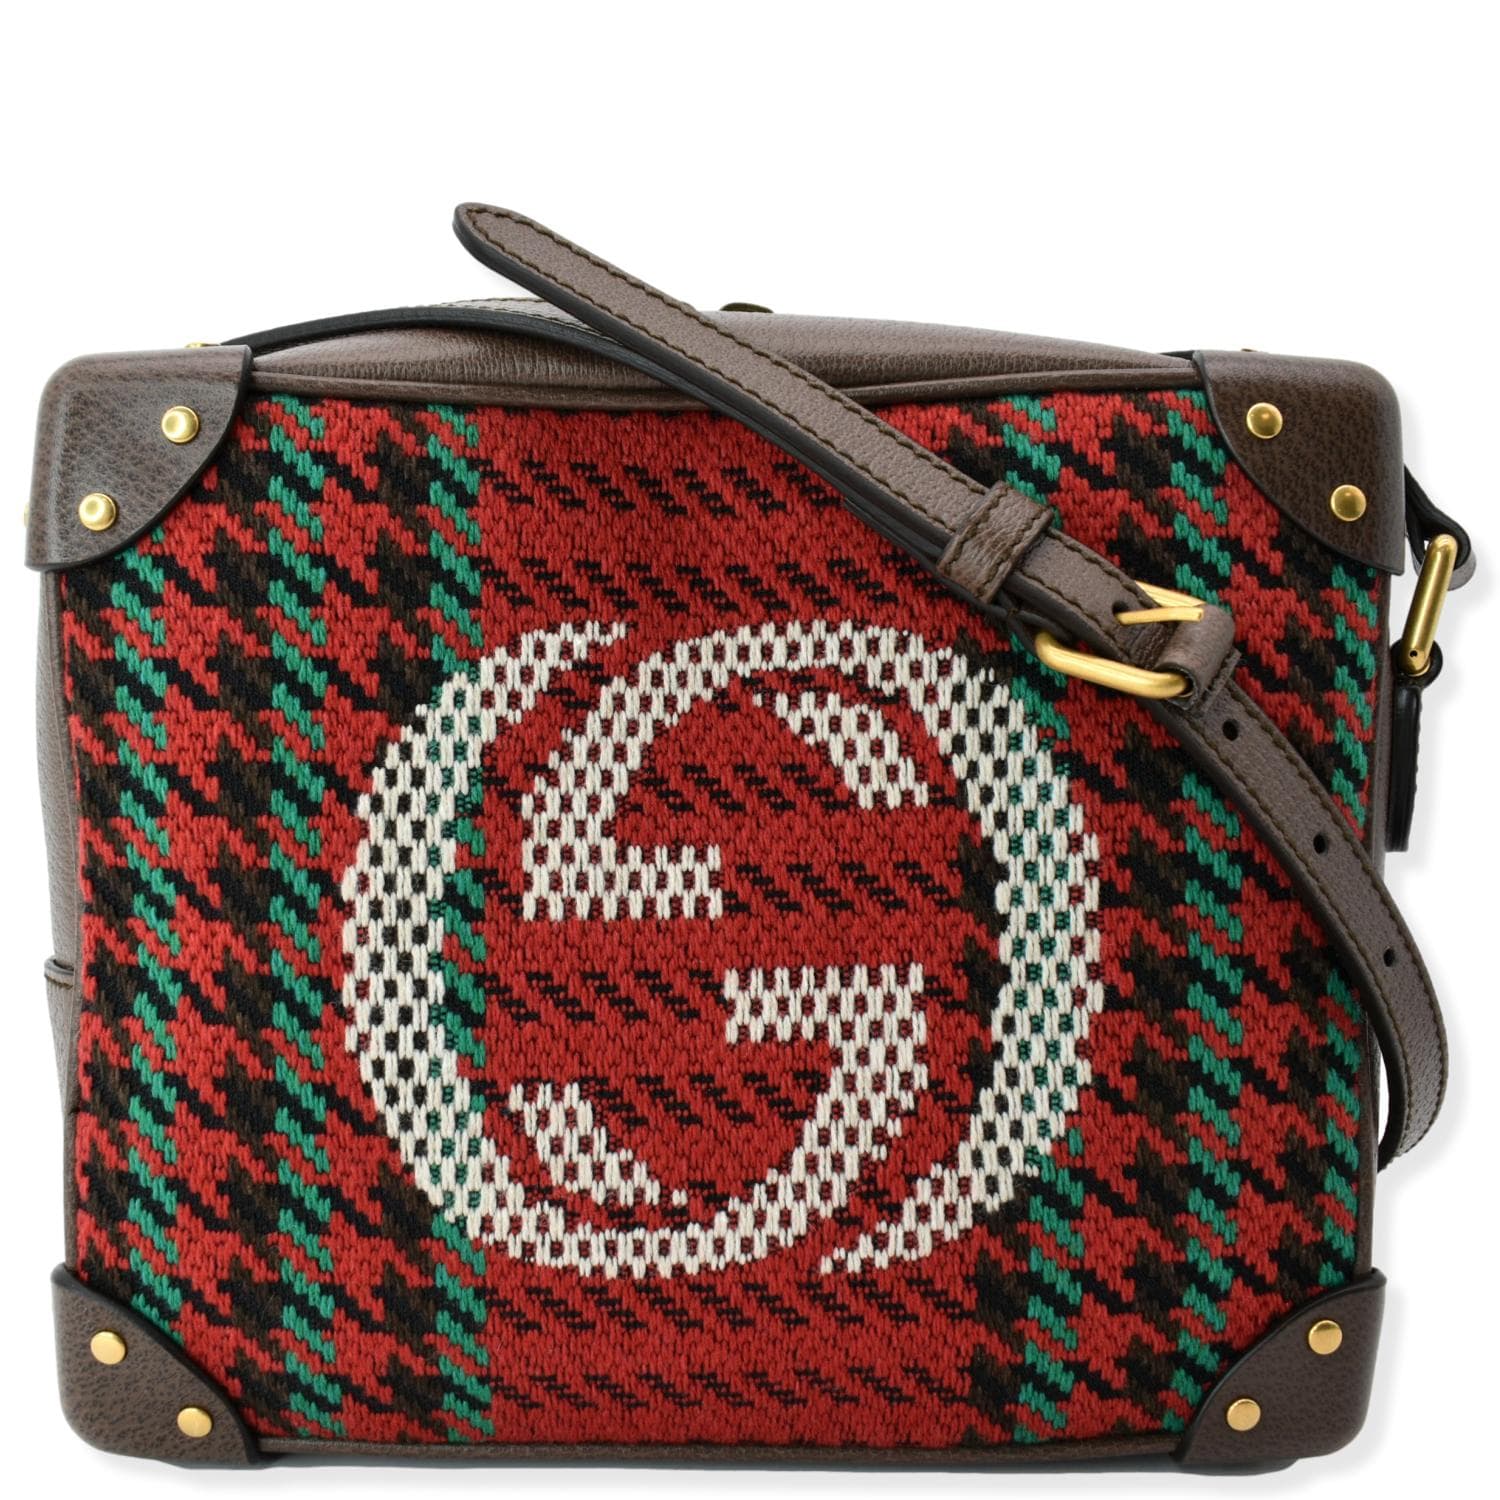 Gucci Indy Bag - PurseBlog | Bags, Gucci bag, Gucci handbags